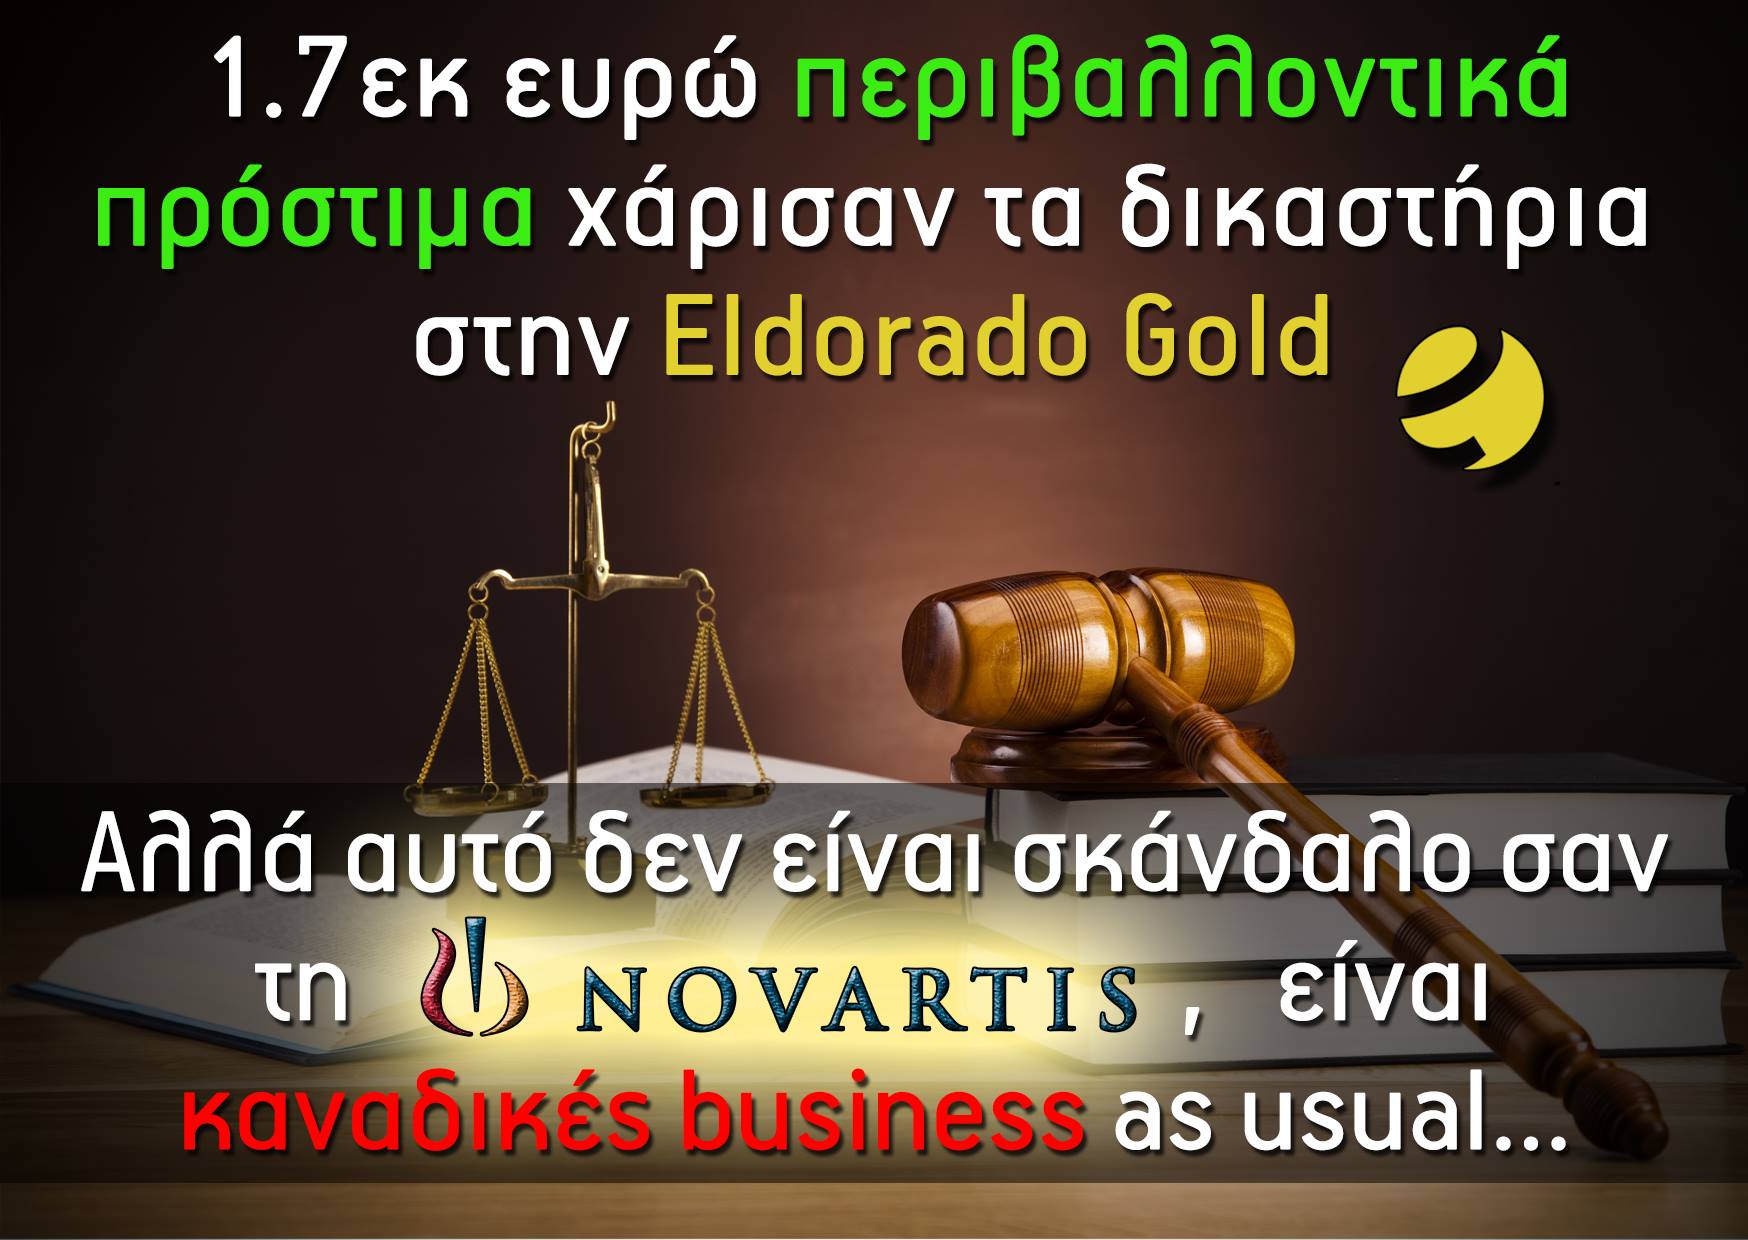 Ελληνικός Χρυσός και Novartis στα “βραβεία εταιρικής υπευθυνότητας”… #skouries